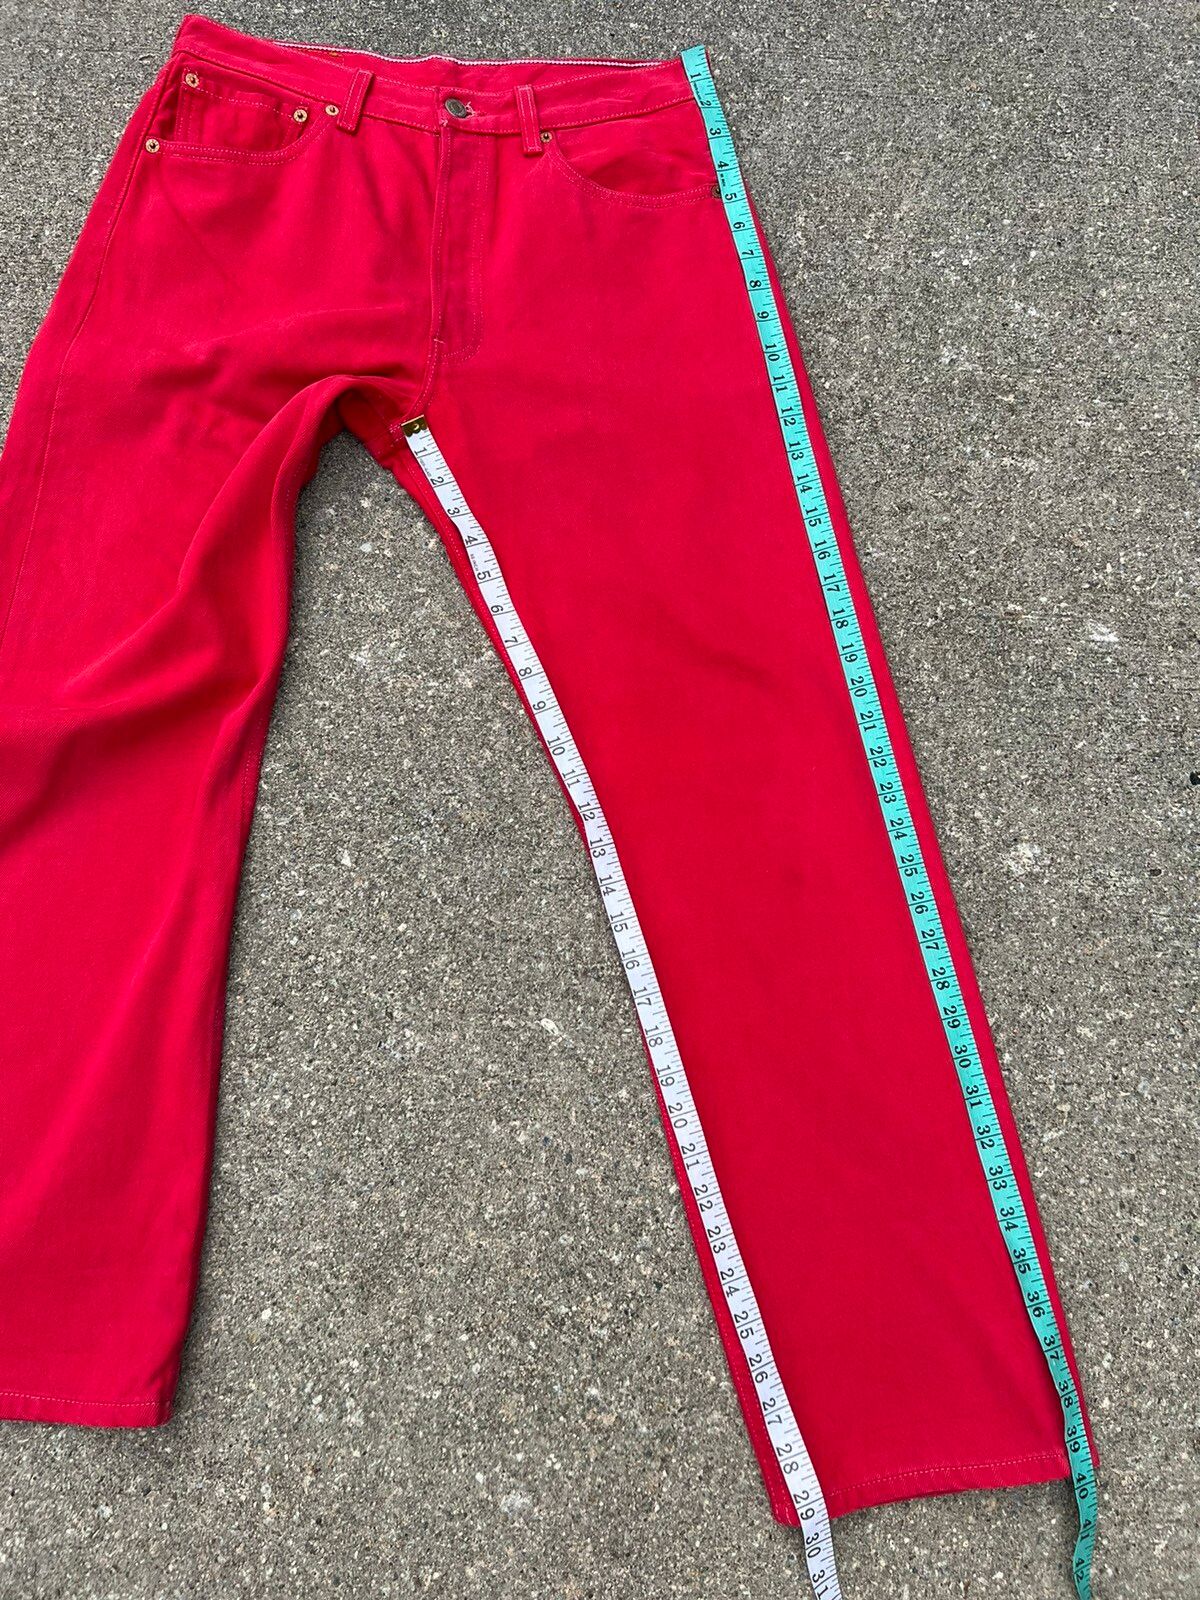 Vintage Vintage 1999 Levi’s 501 Fade Red Denim Jeans Size US 31 - 3 Thumbnail